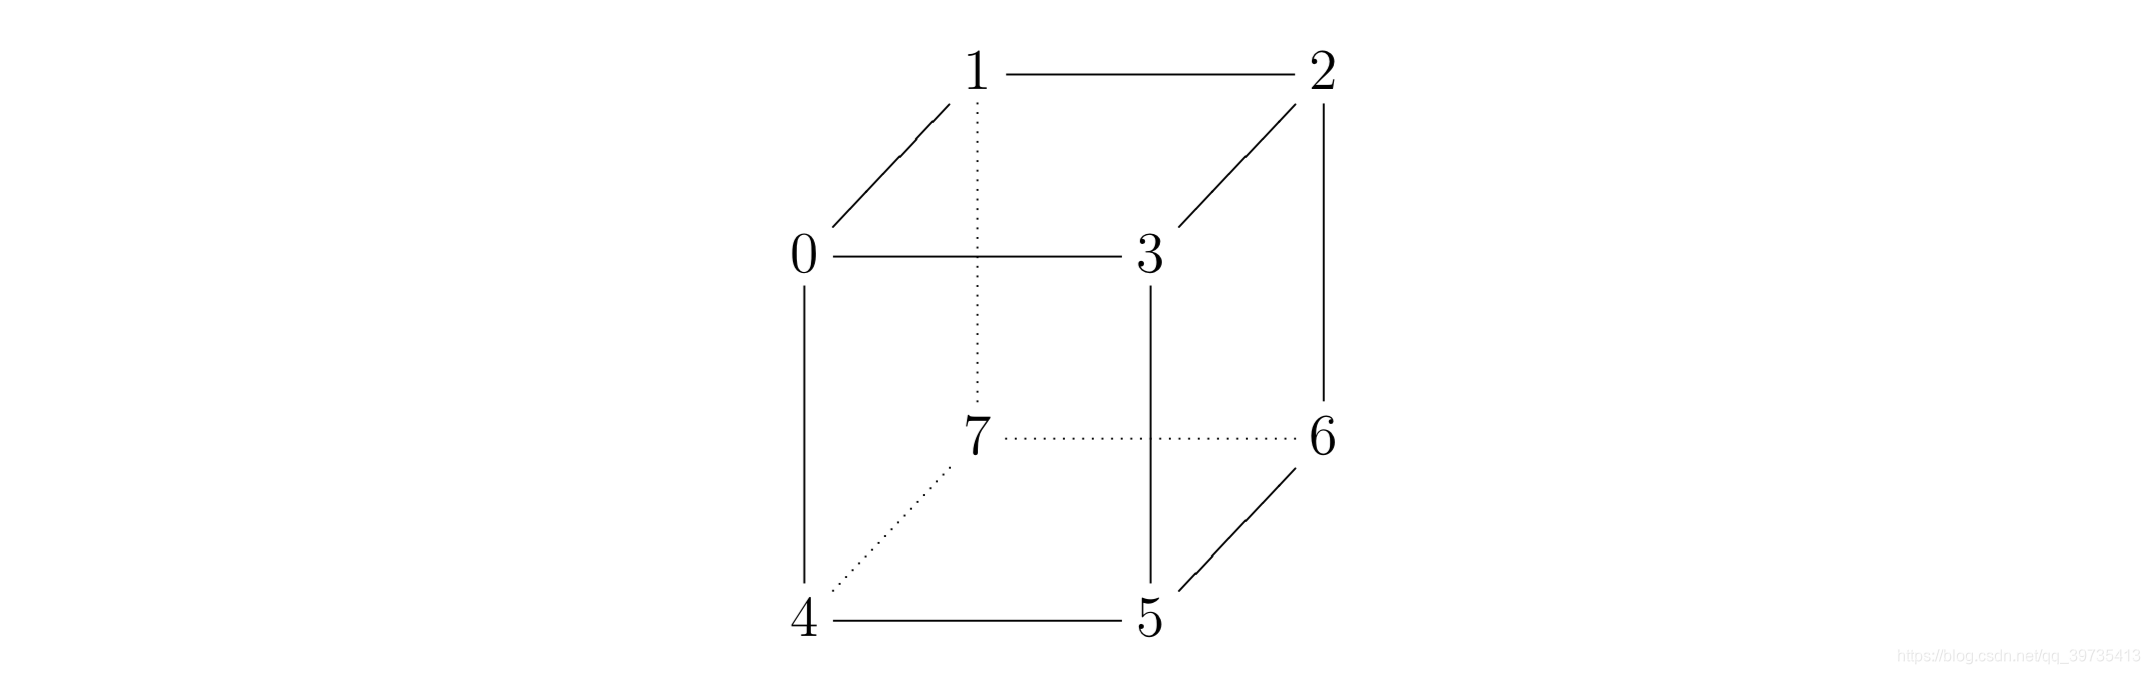 立方体有8个顶点